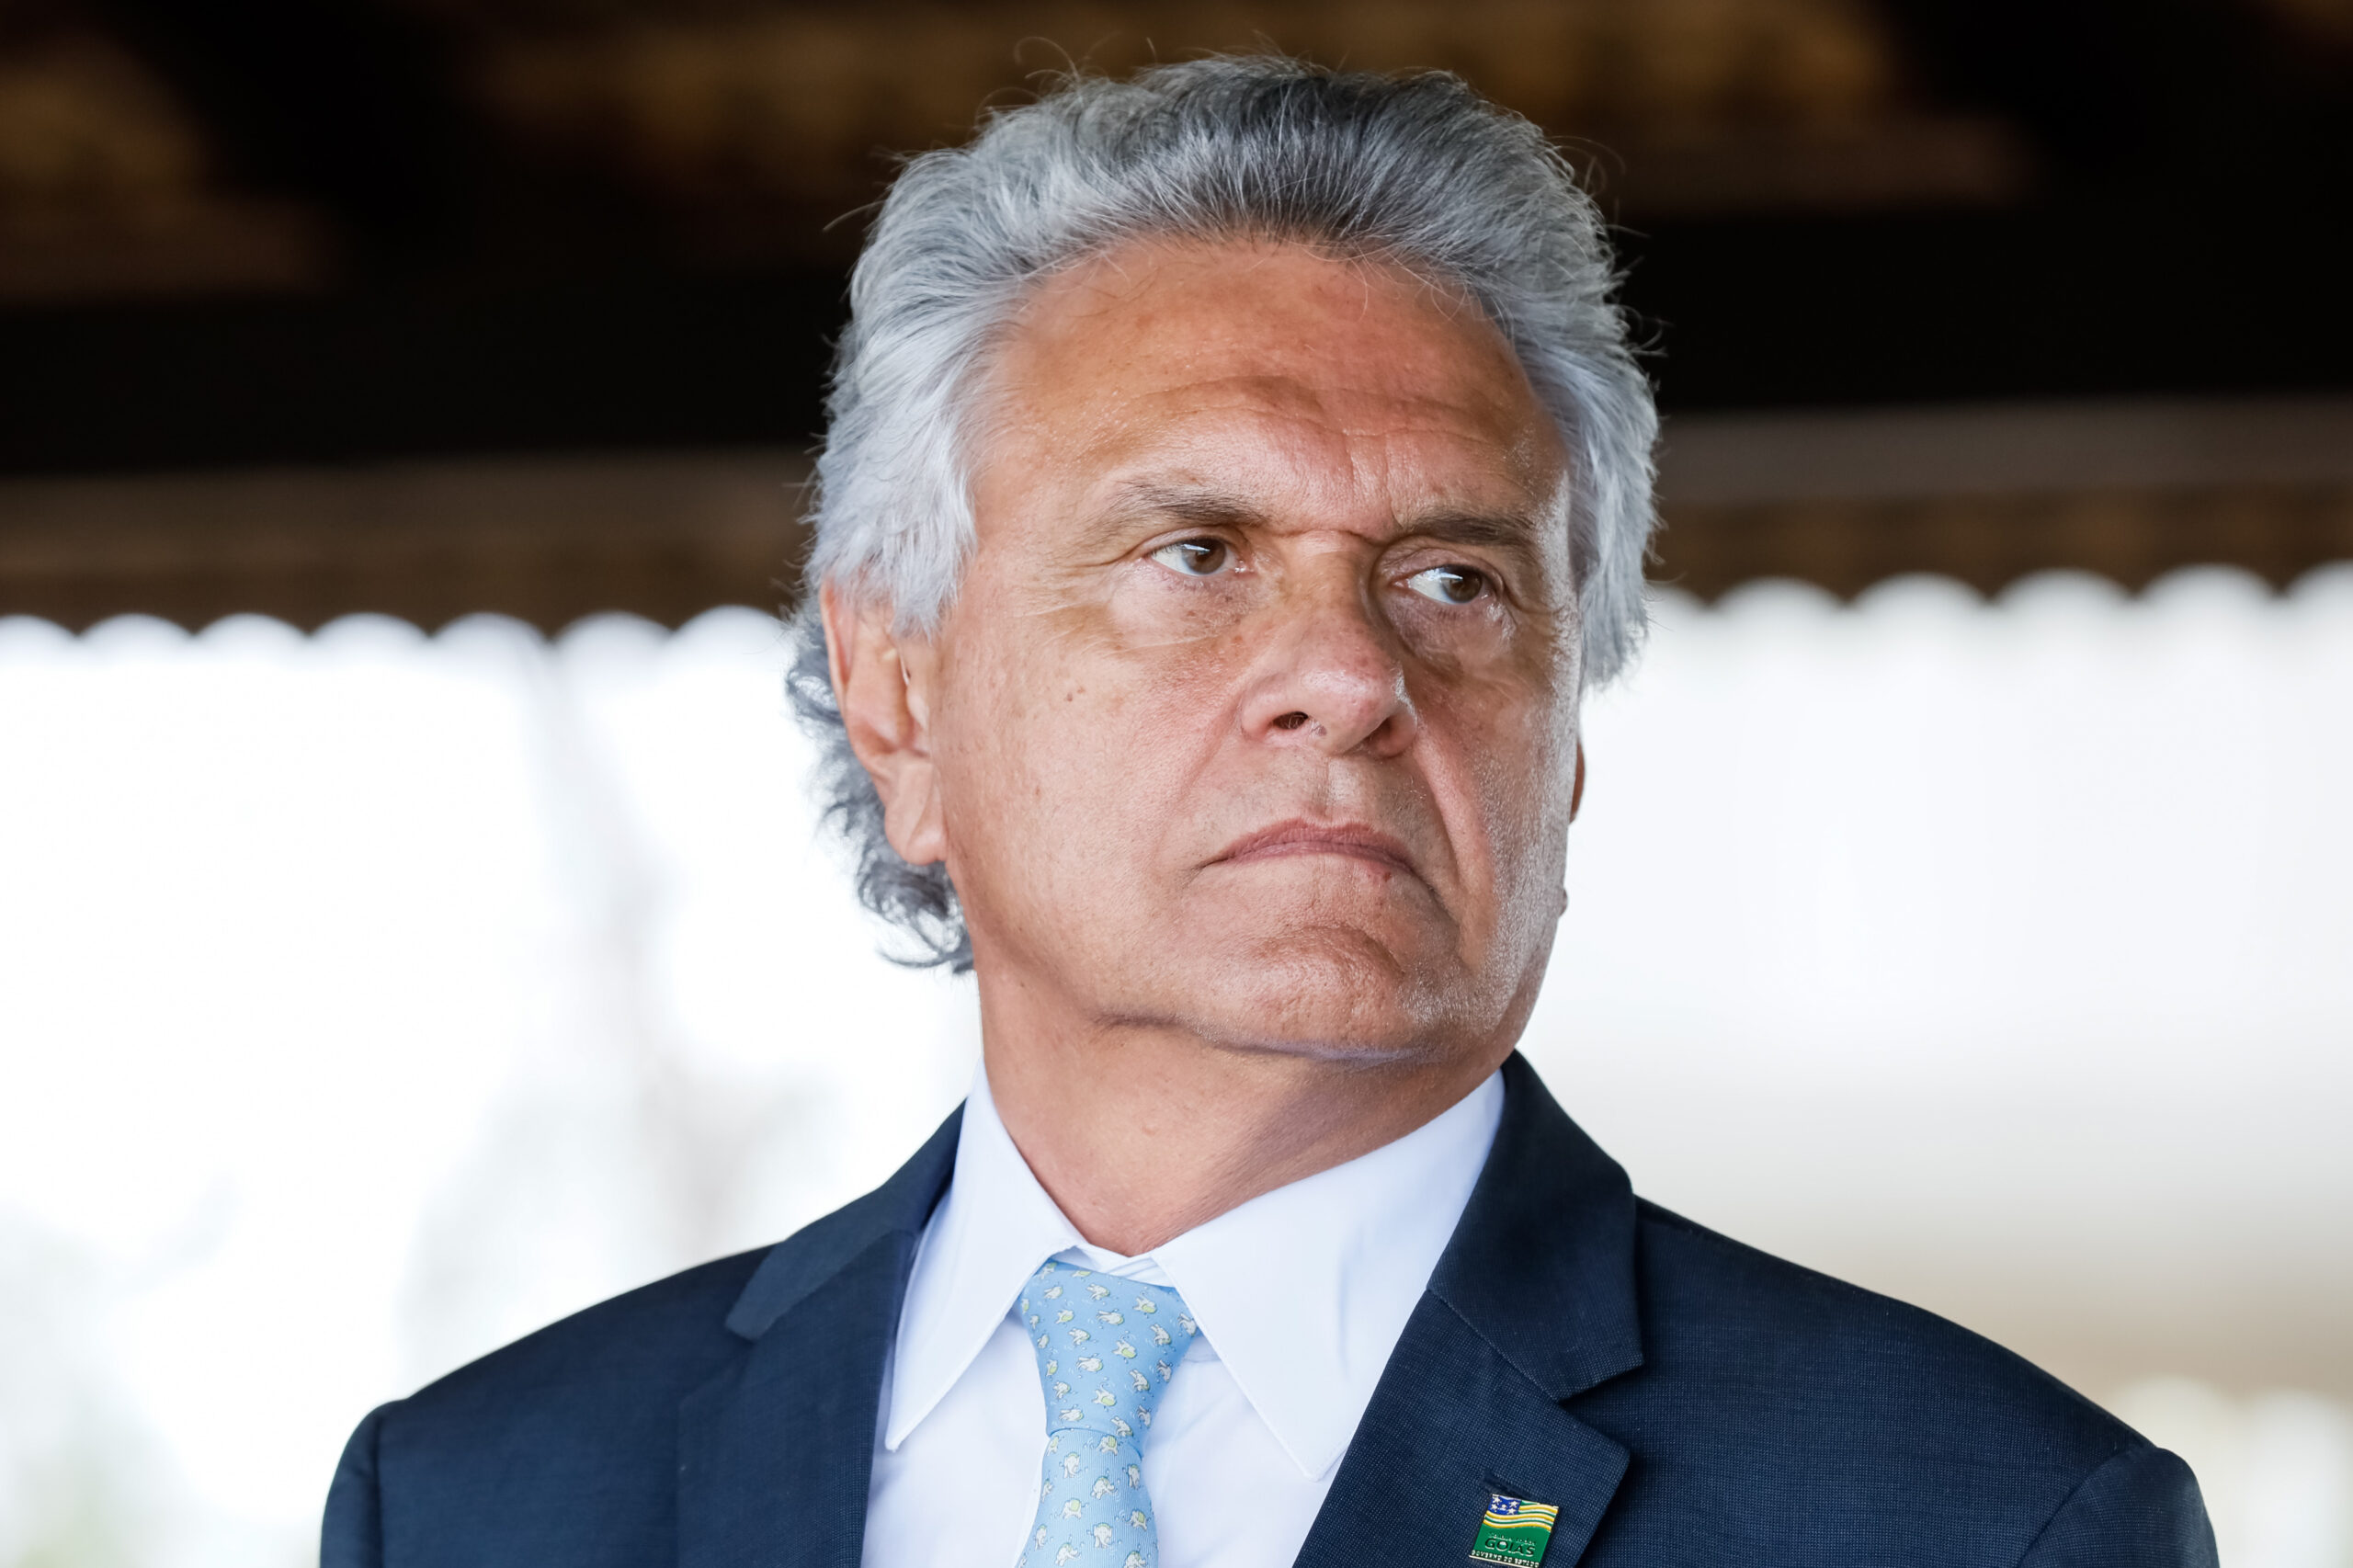 Alta aprovação em Goiás alavanca projeto presidencial de Caiado